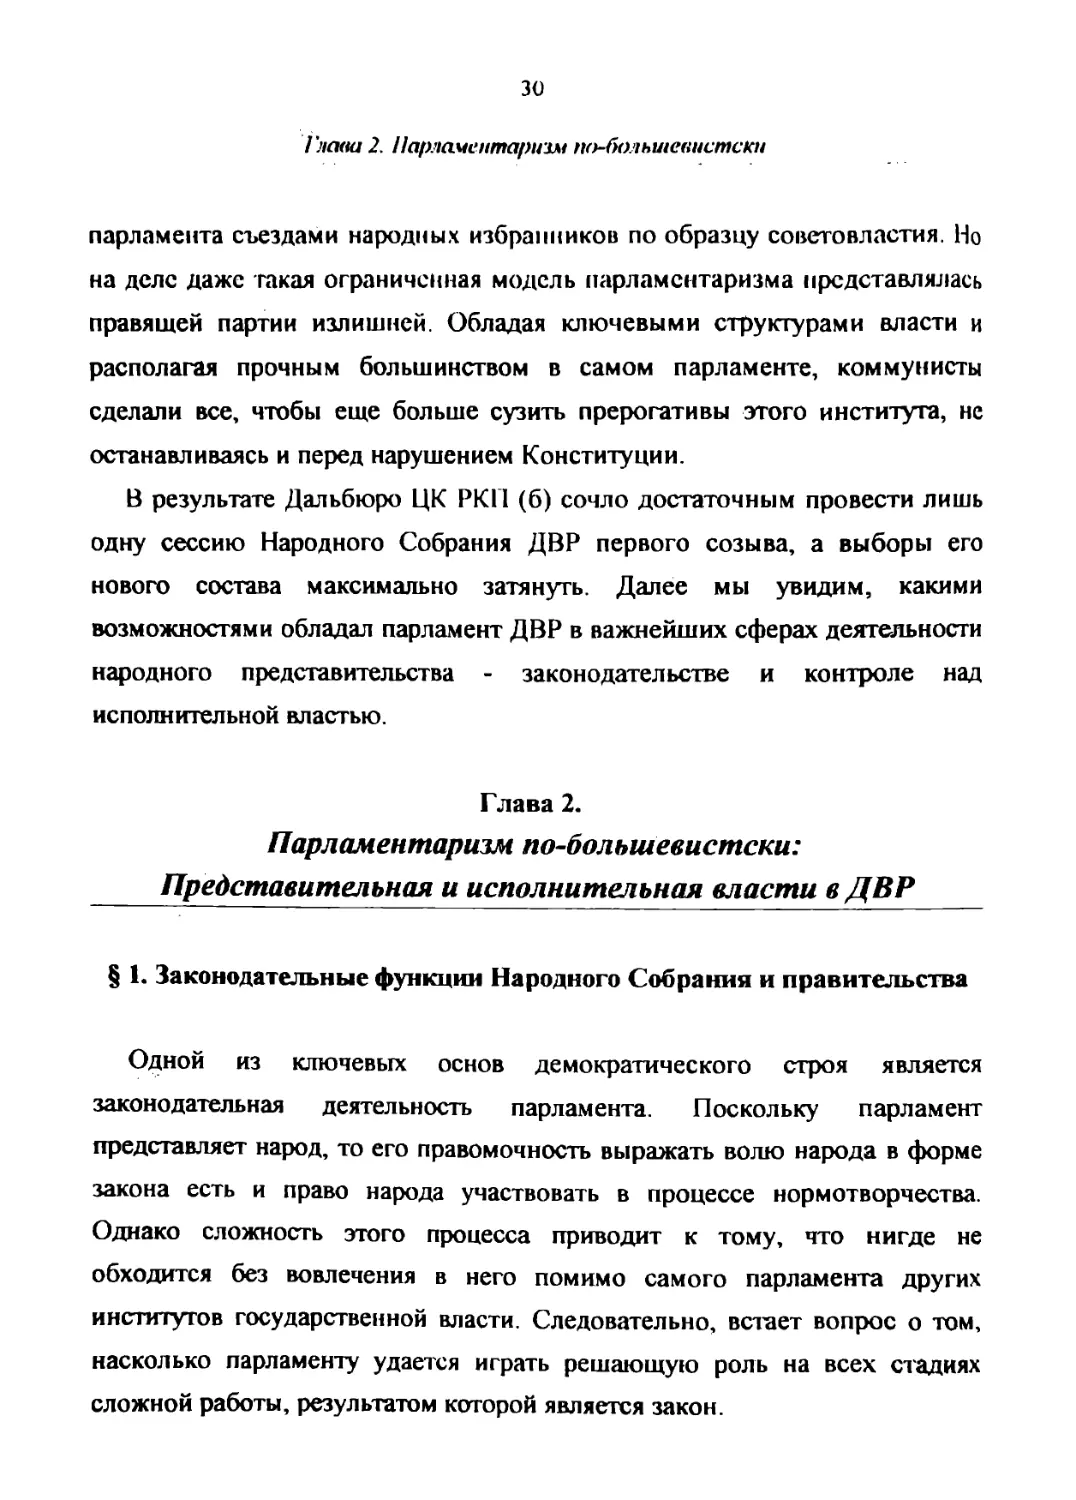 ГЛАВА 2. Парламентаризм по-большевистски: Представительная и исполнительная власти в ДВР